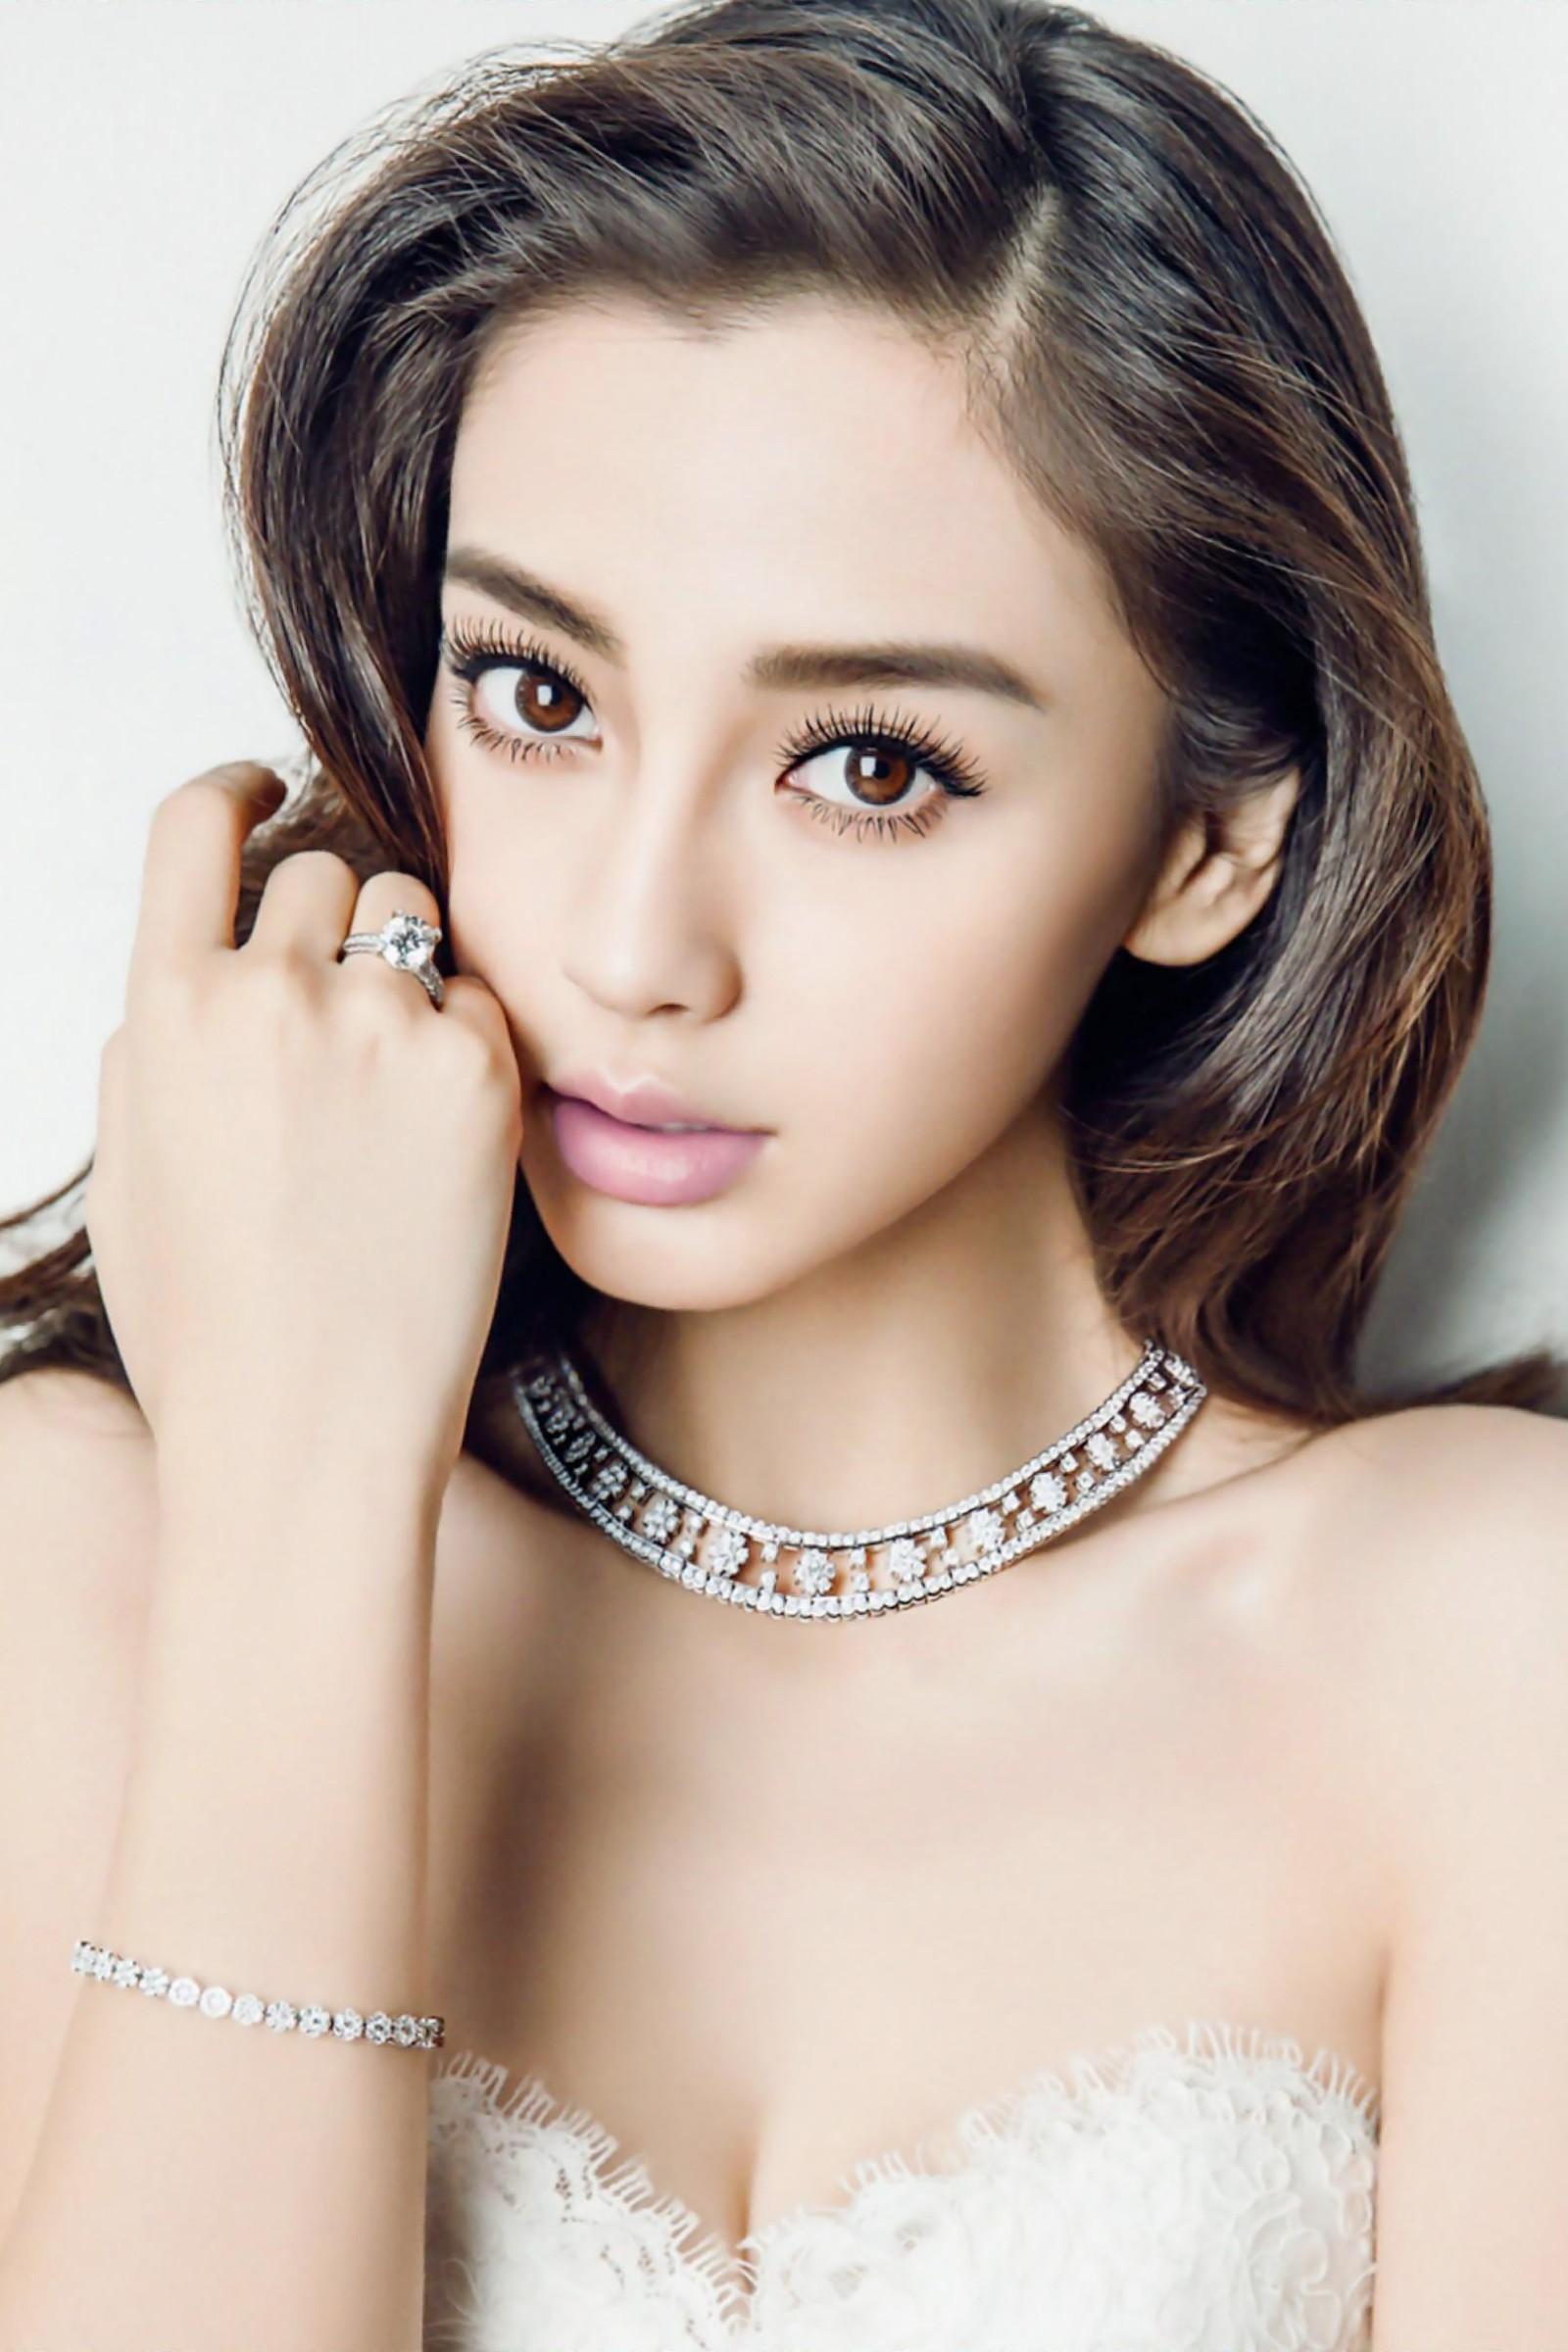 中国最美的女演员排名图片